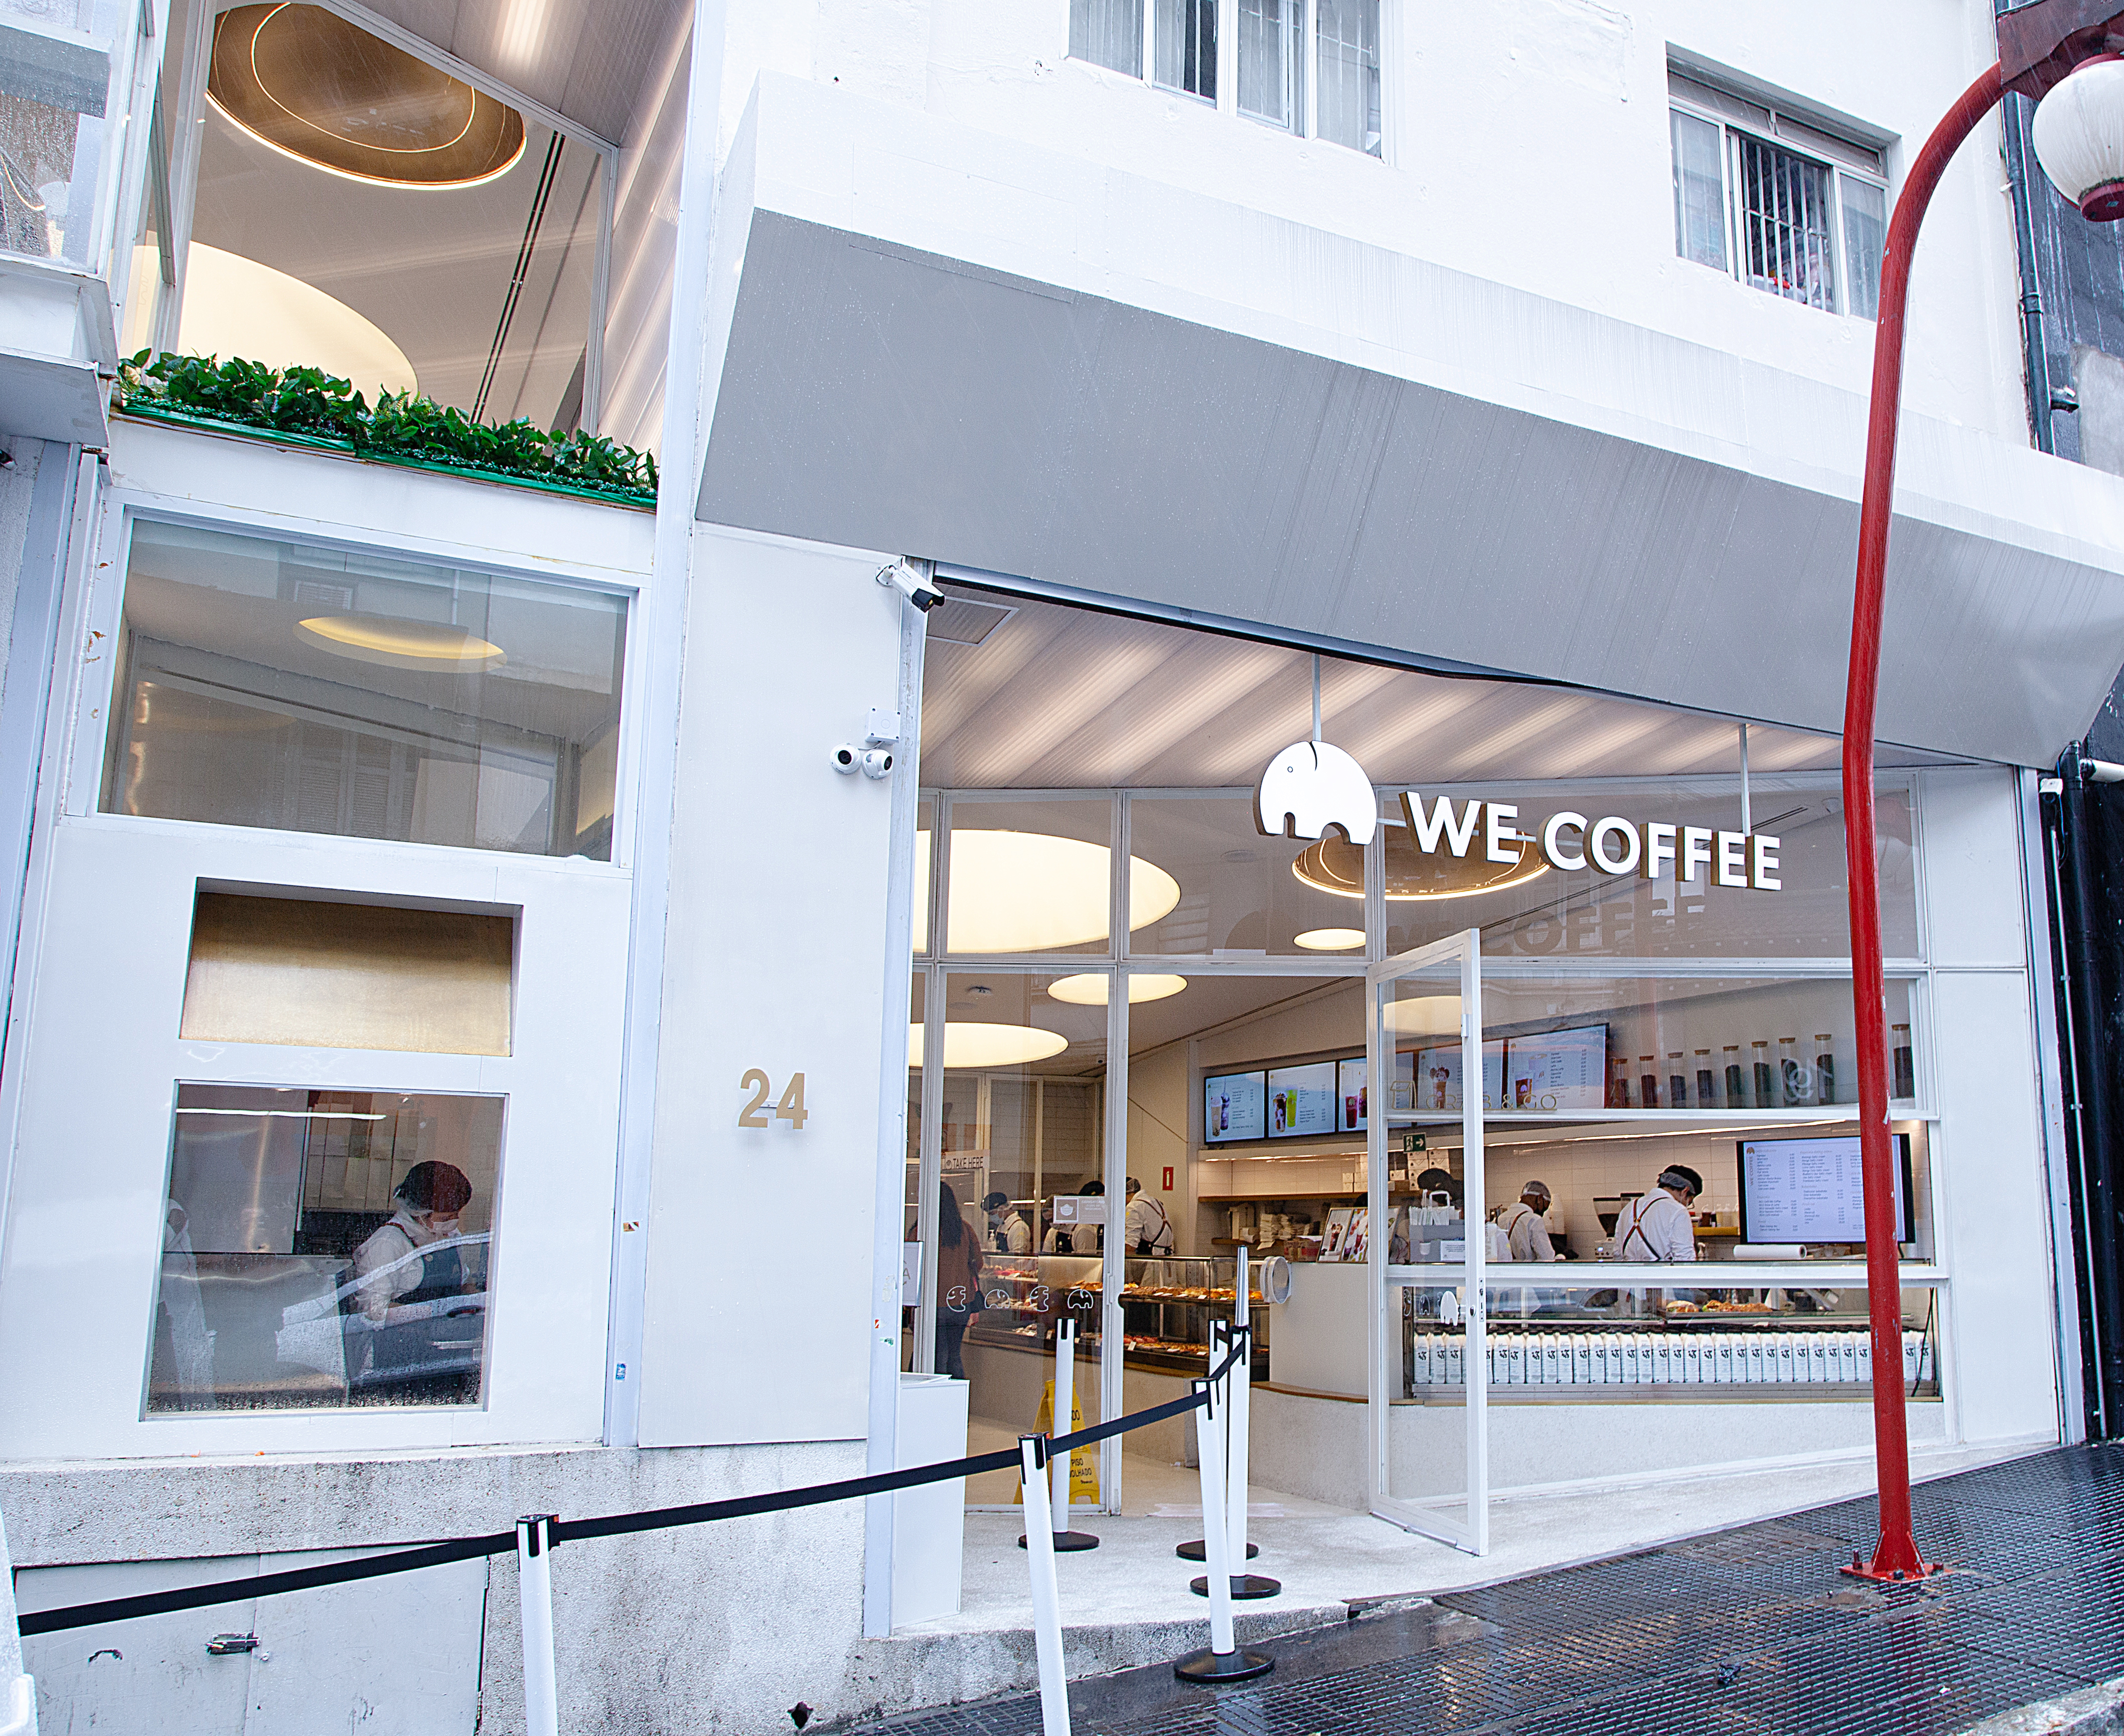 Com decoração instagramável, cafeteria não passa despercebida | VEJA SÃO  PAULO